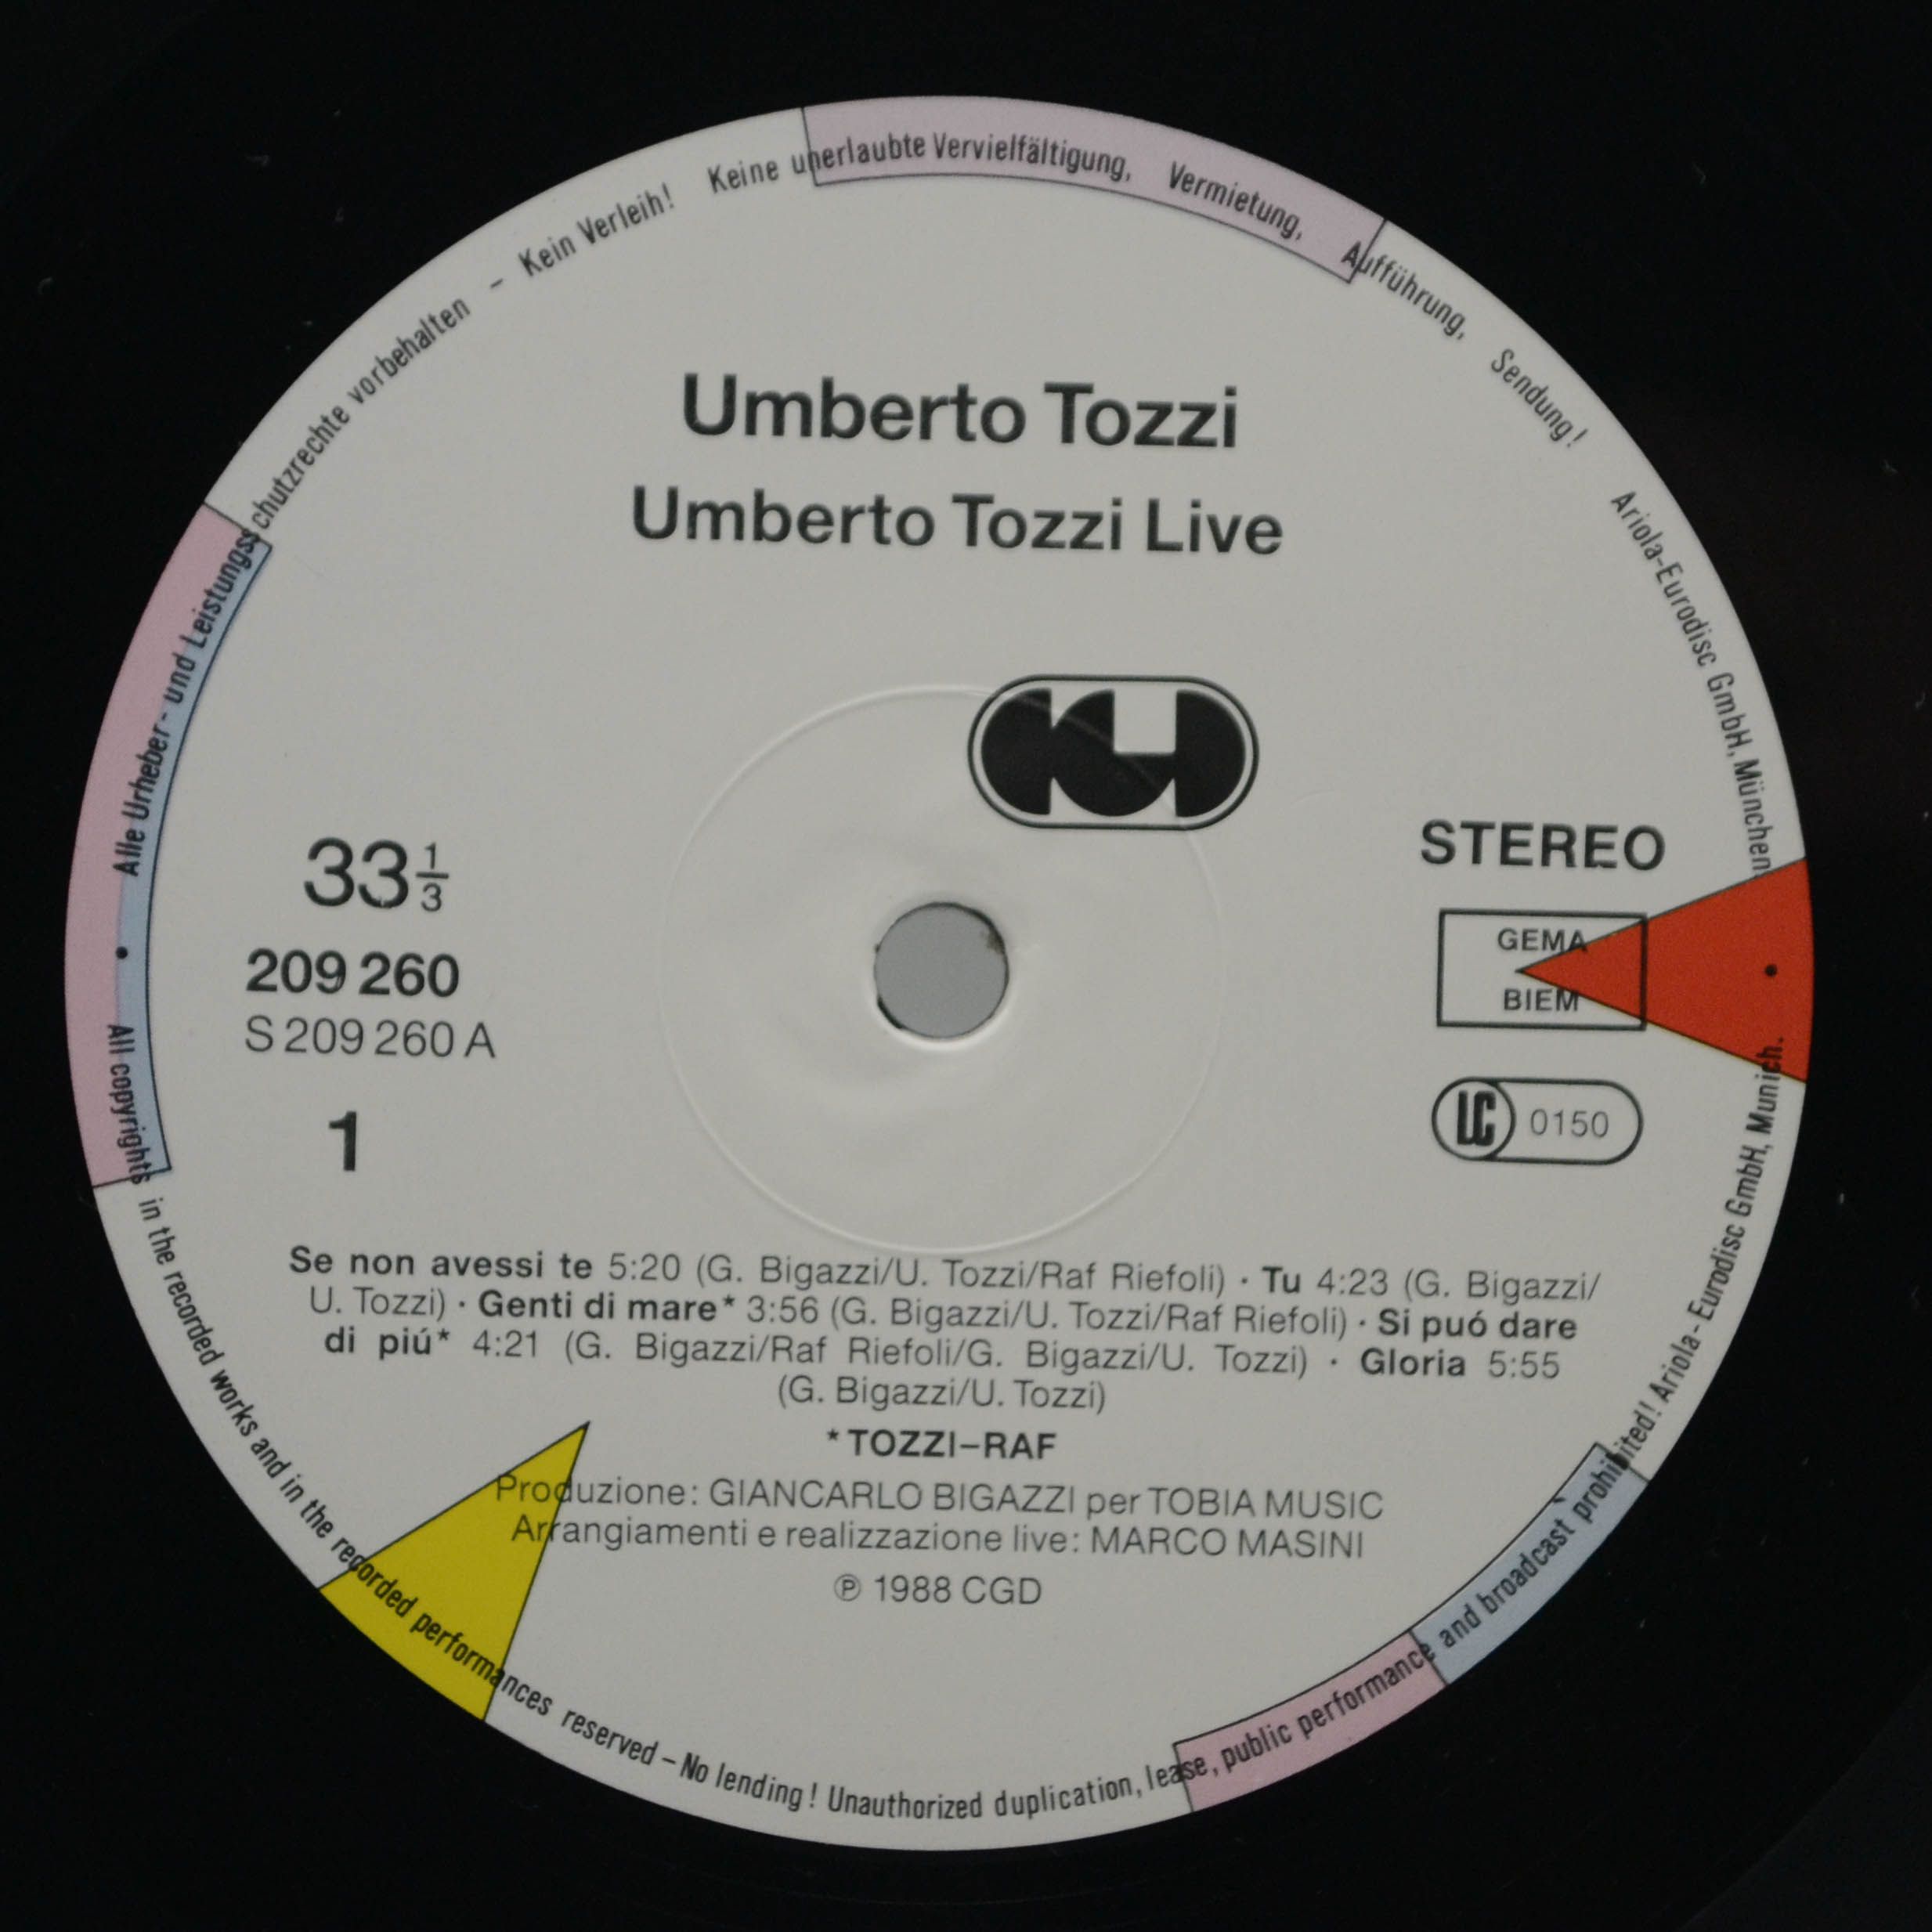 Umberto Tozzi — Live Royal Albert Hall, 1988